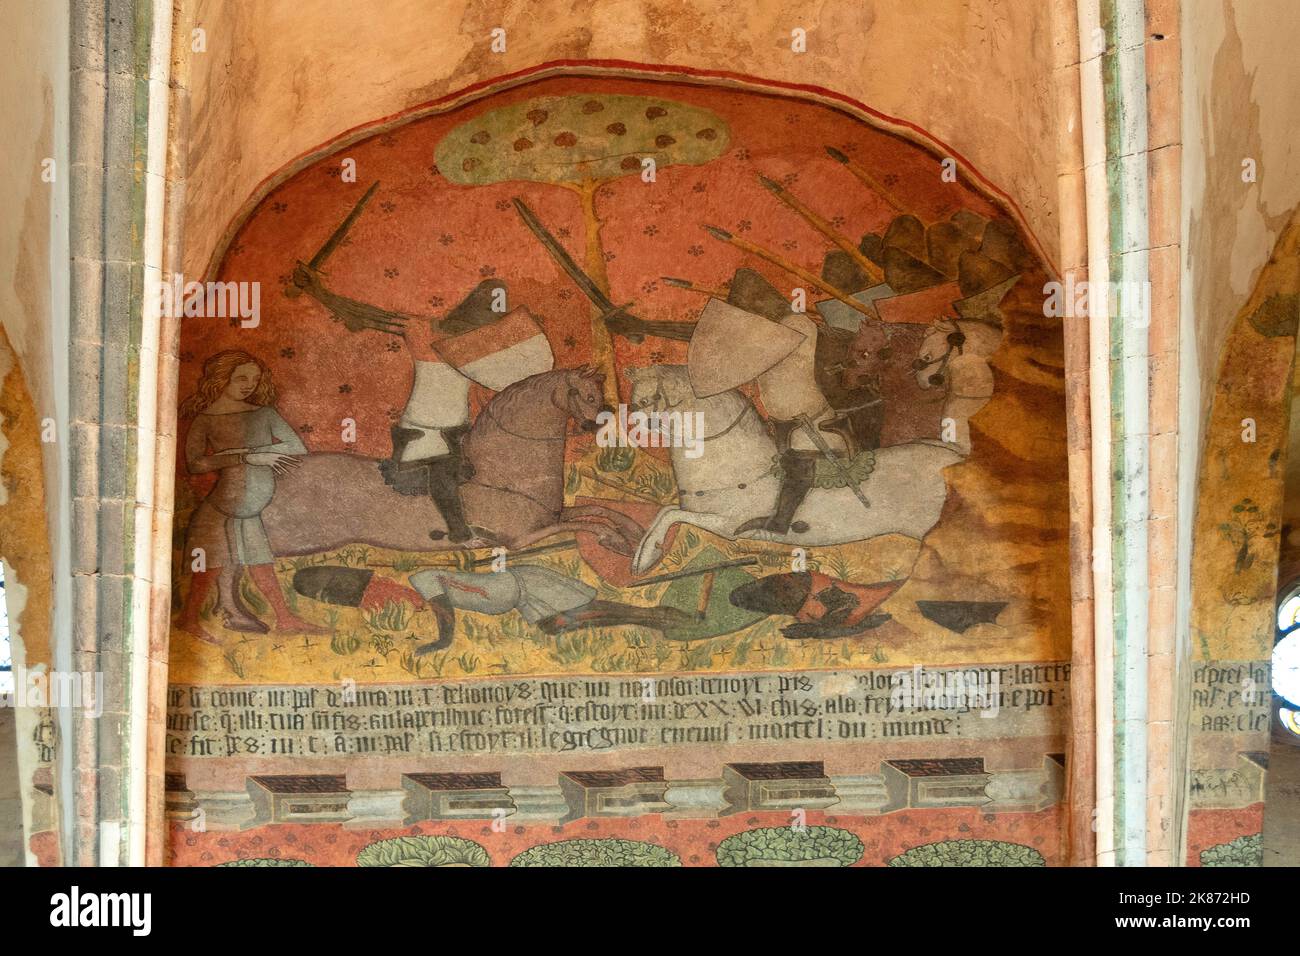 Château de Saint Floret, fresques du 14th siècle représentant l'histoire de Tristan et Iseult, Puy de Dome, Auvergne Rhône Alpes, France. Europe Banque D'Images